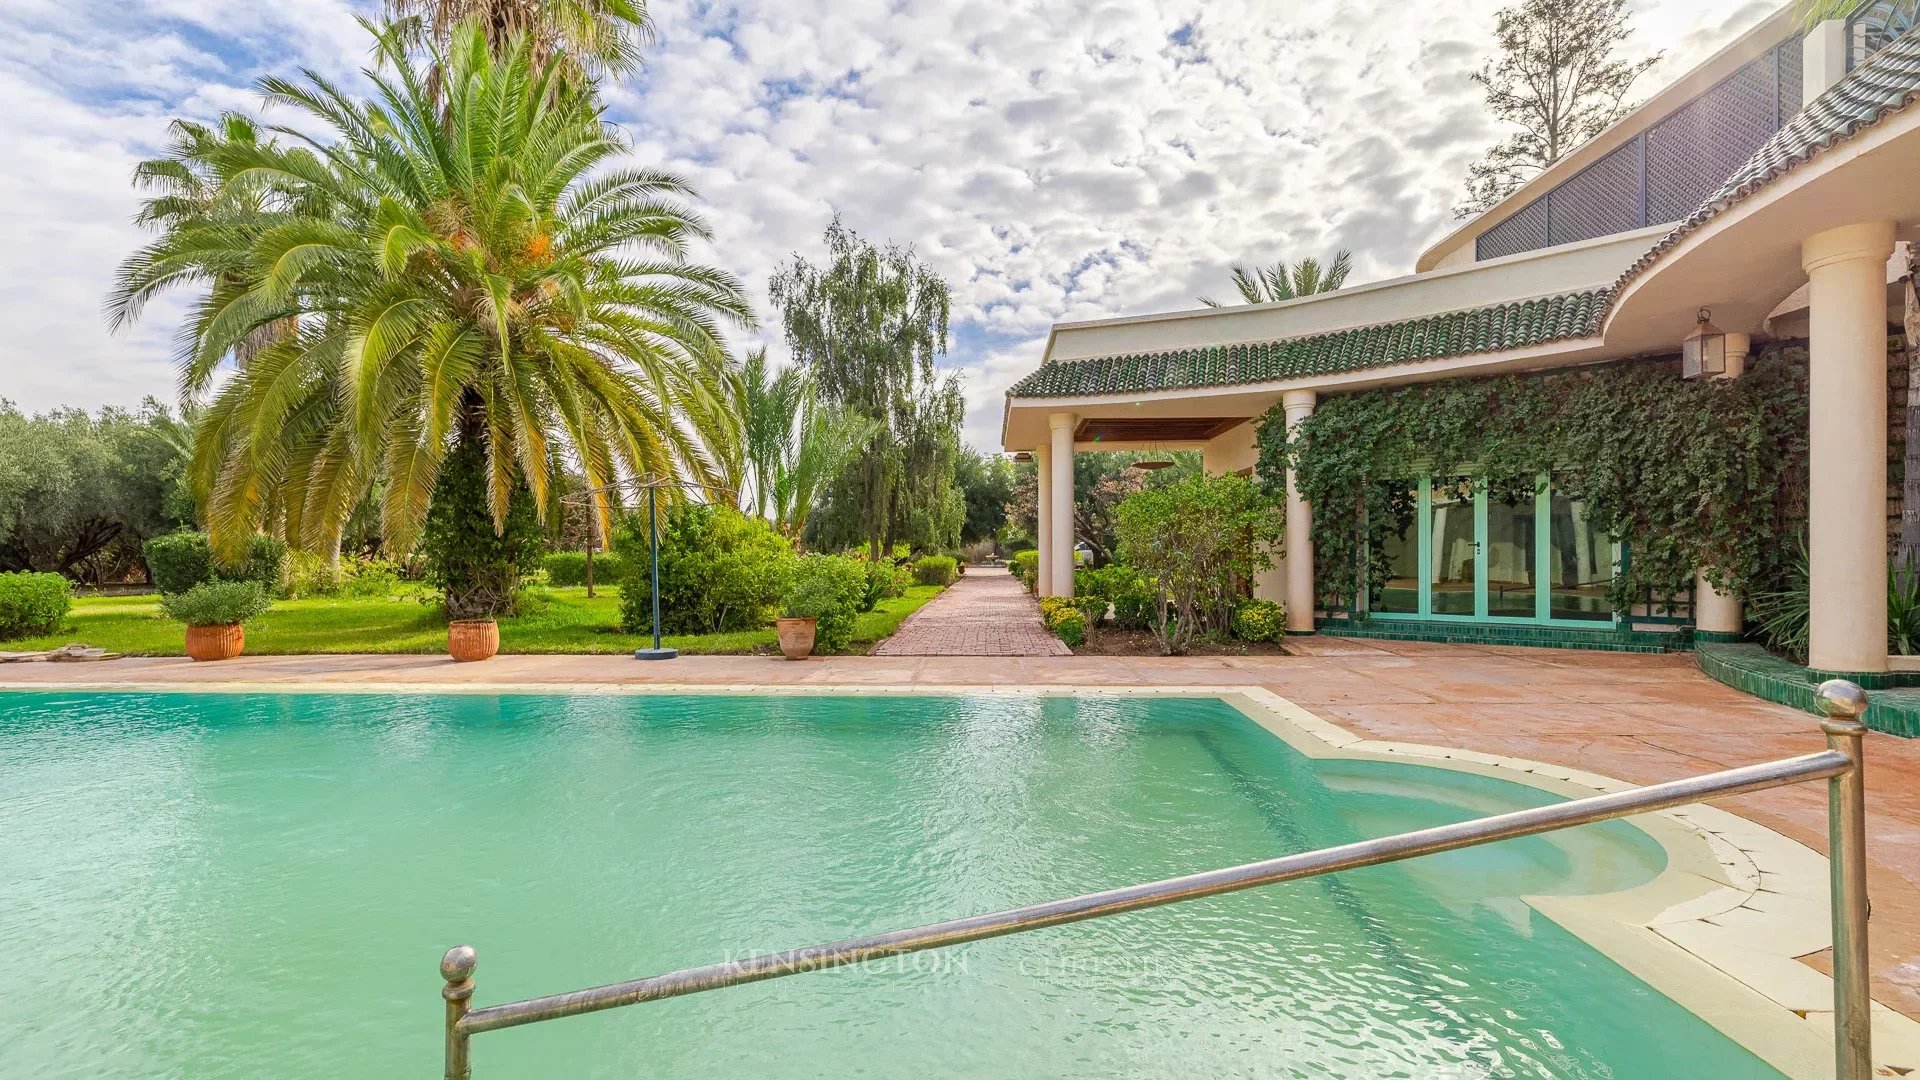 Villa Depios in Marrakech, Morocco